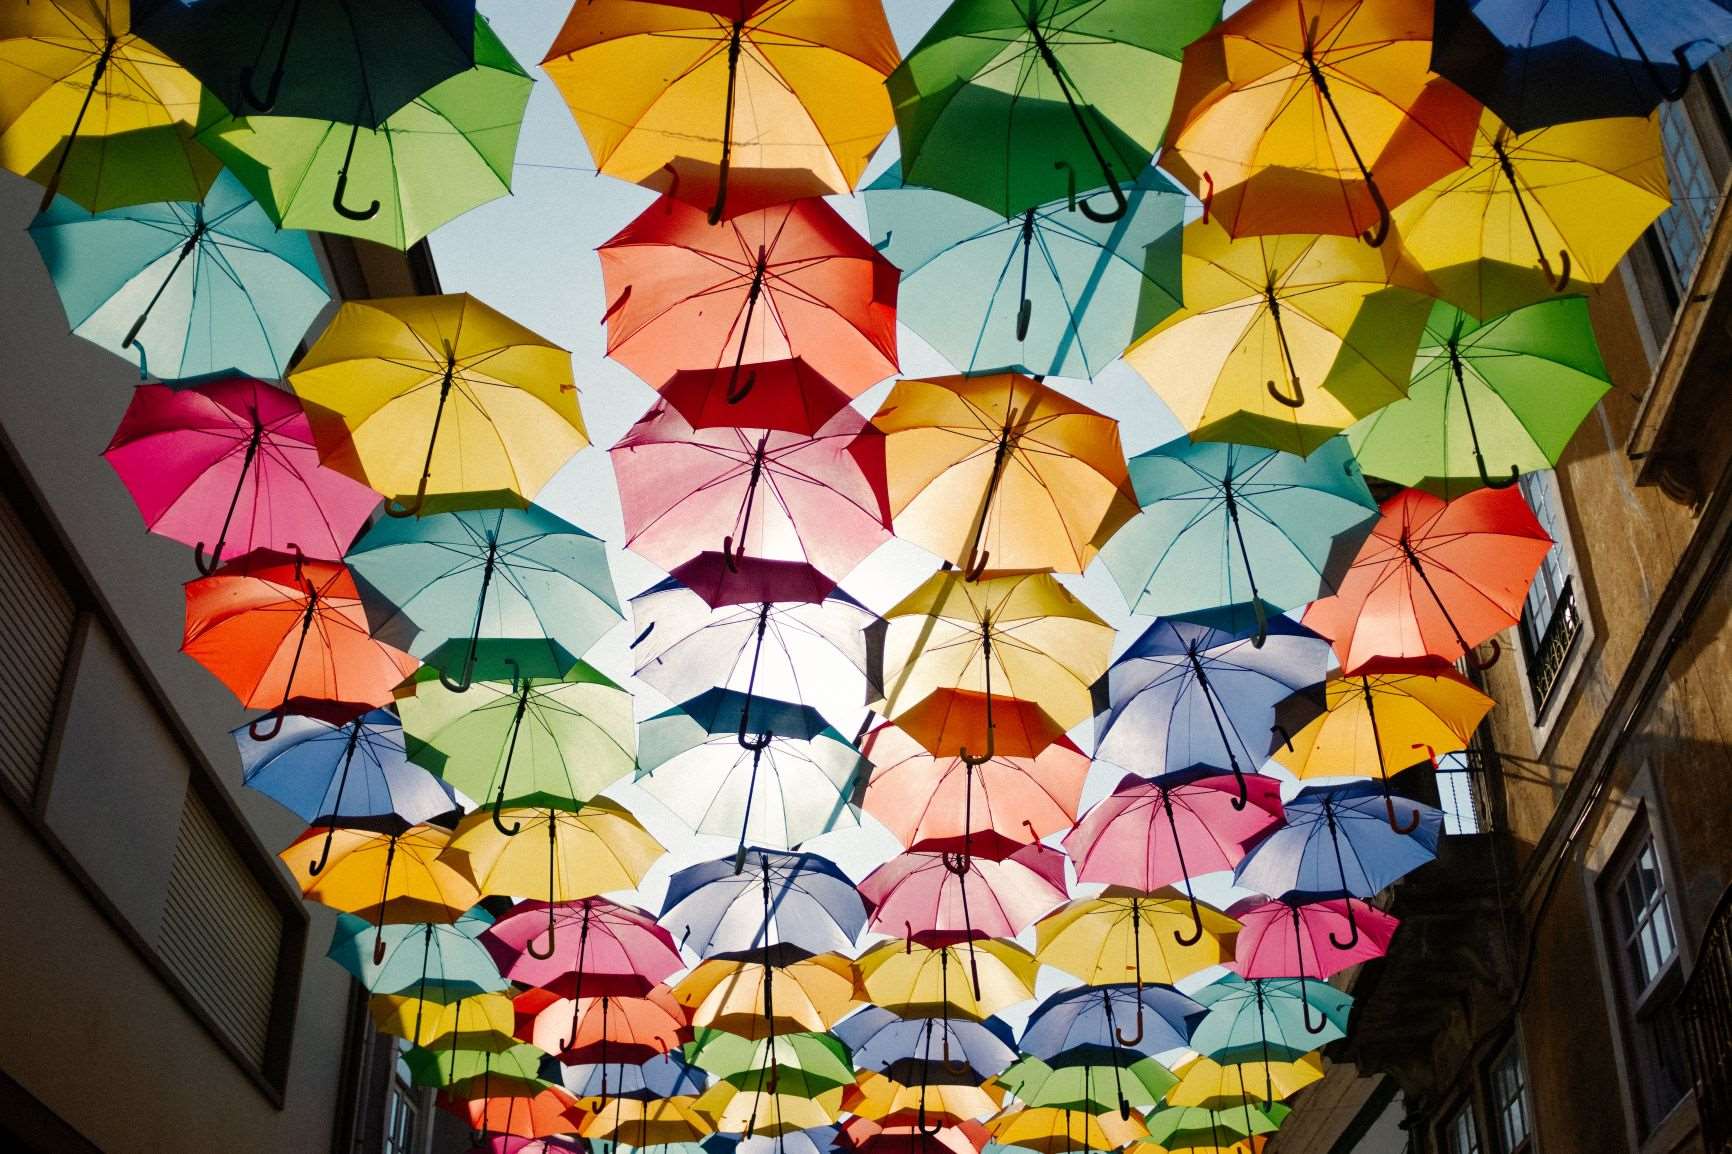 Umbrellas hanging over street